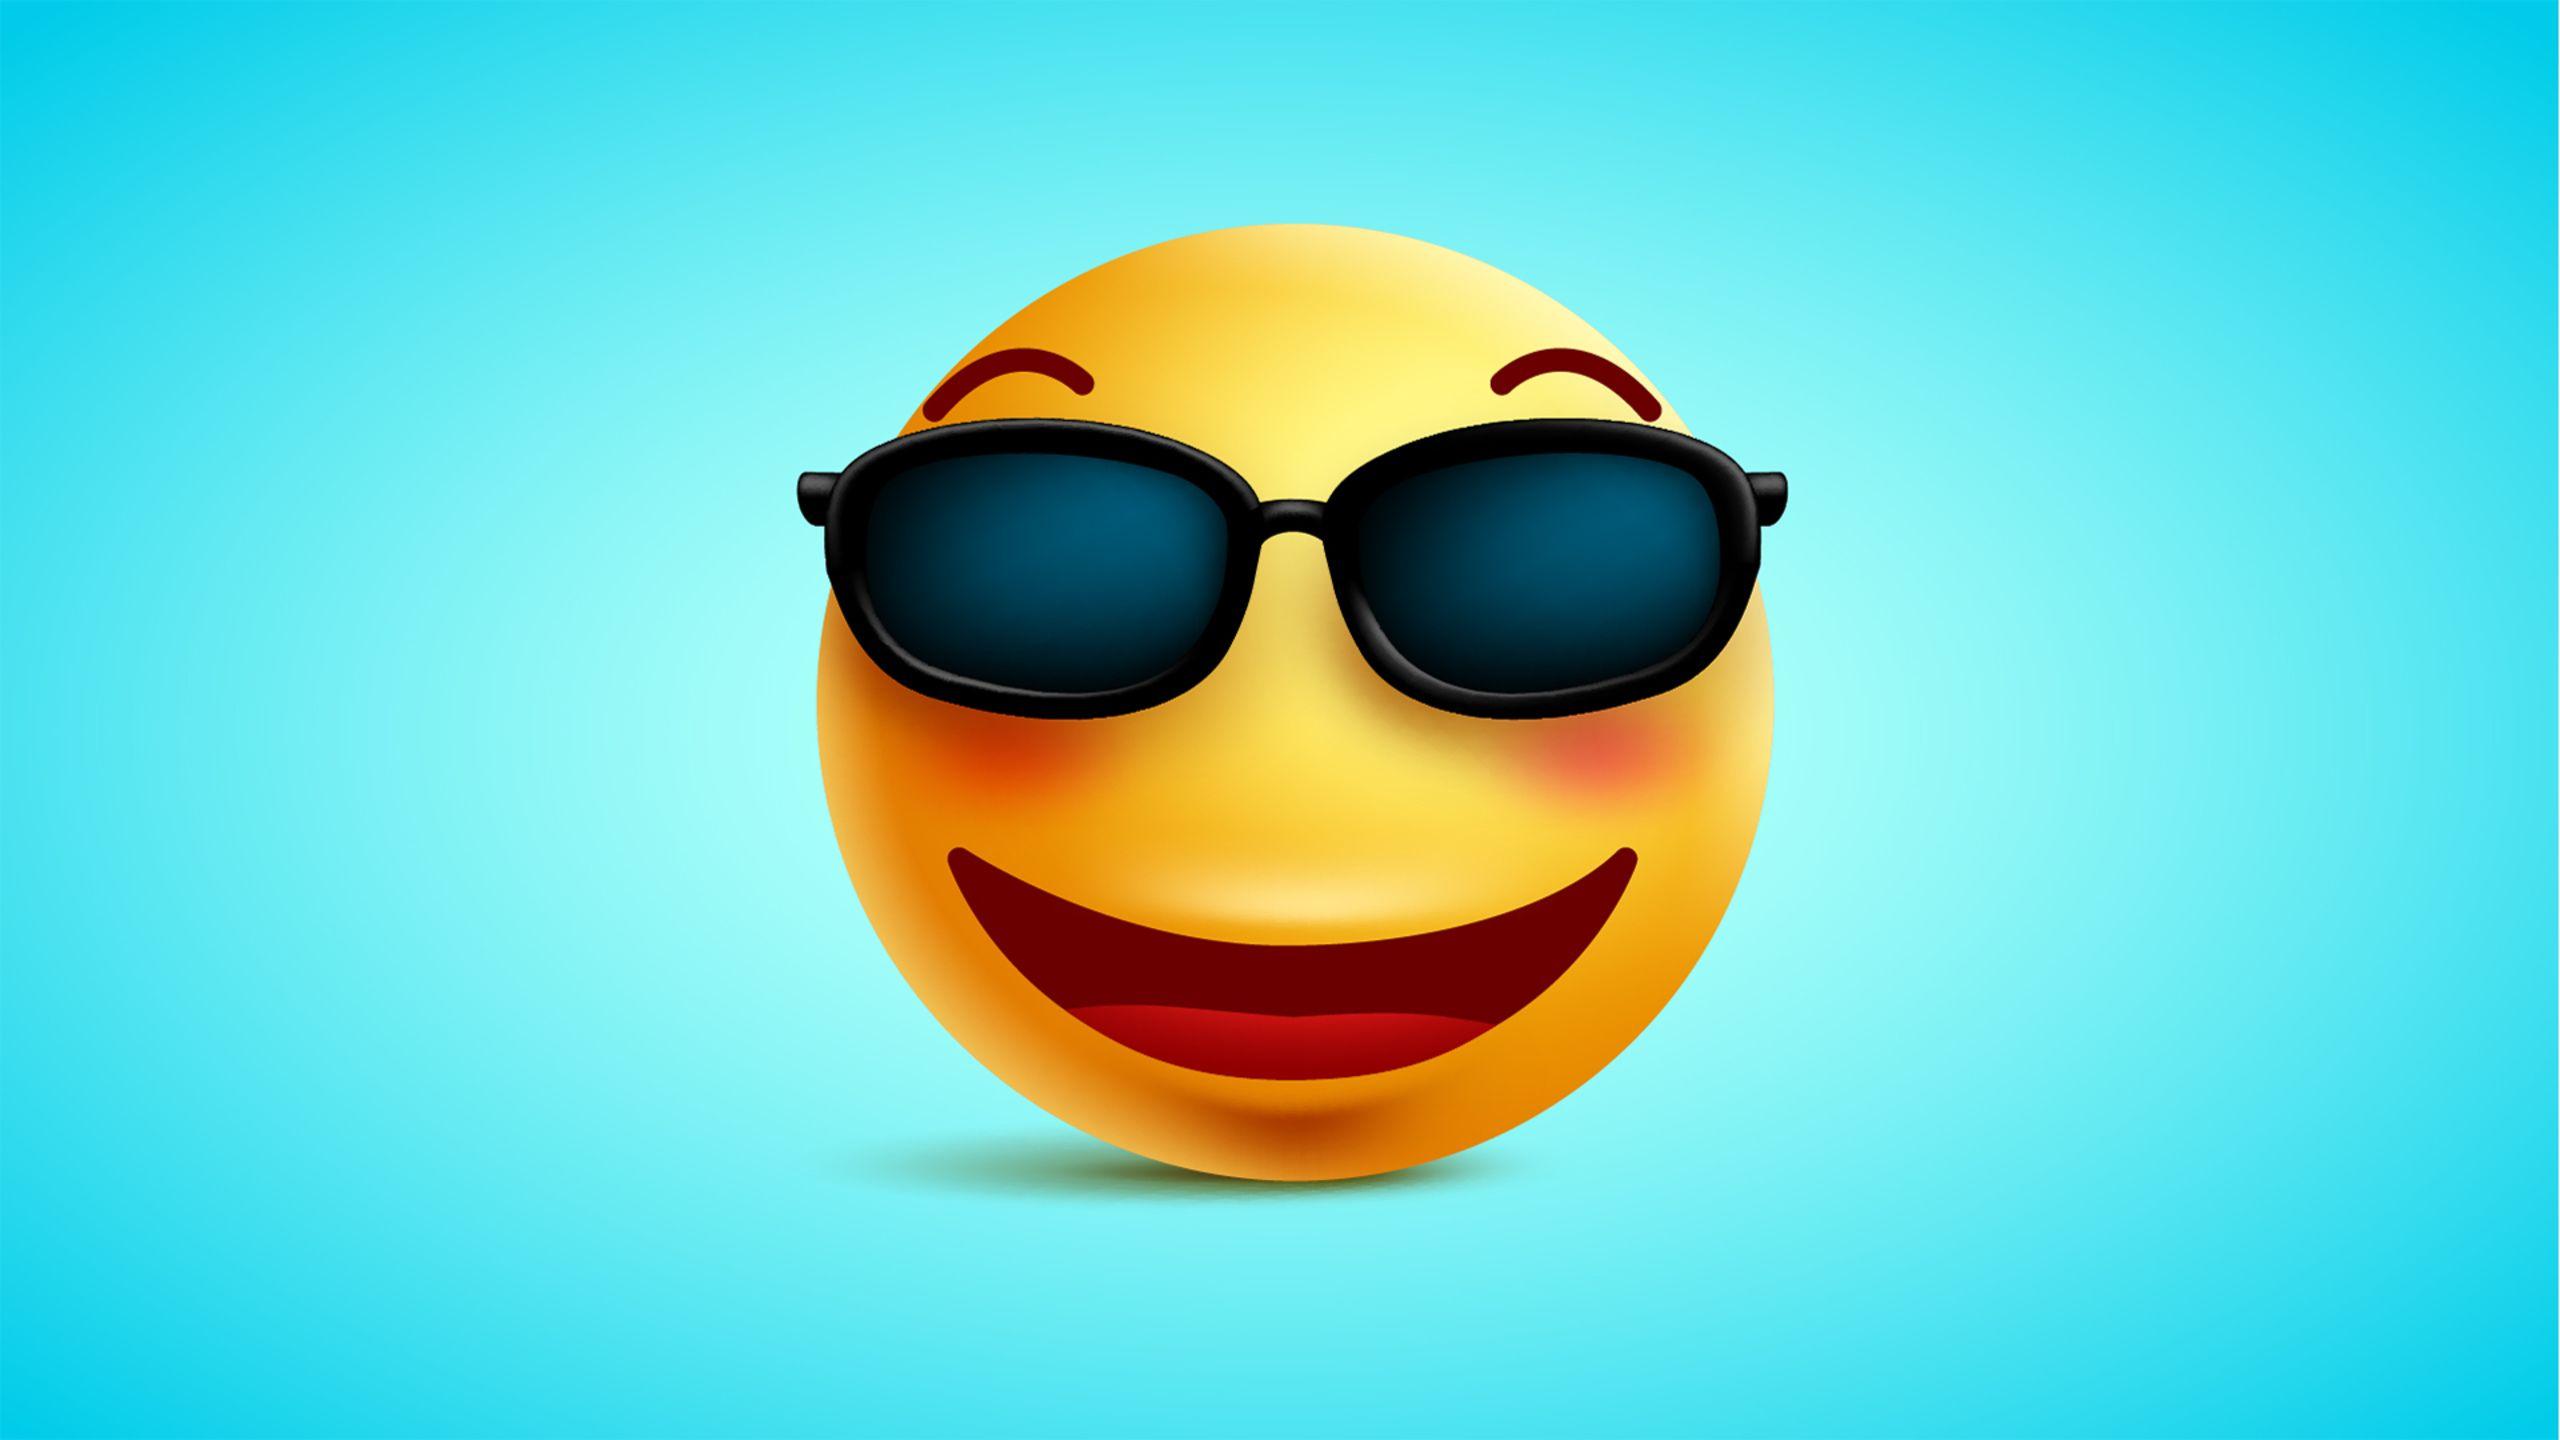 Laughing Emoji Wallpapers - Top Free Laughing Emoji ...